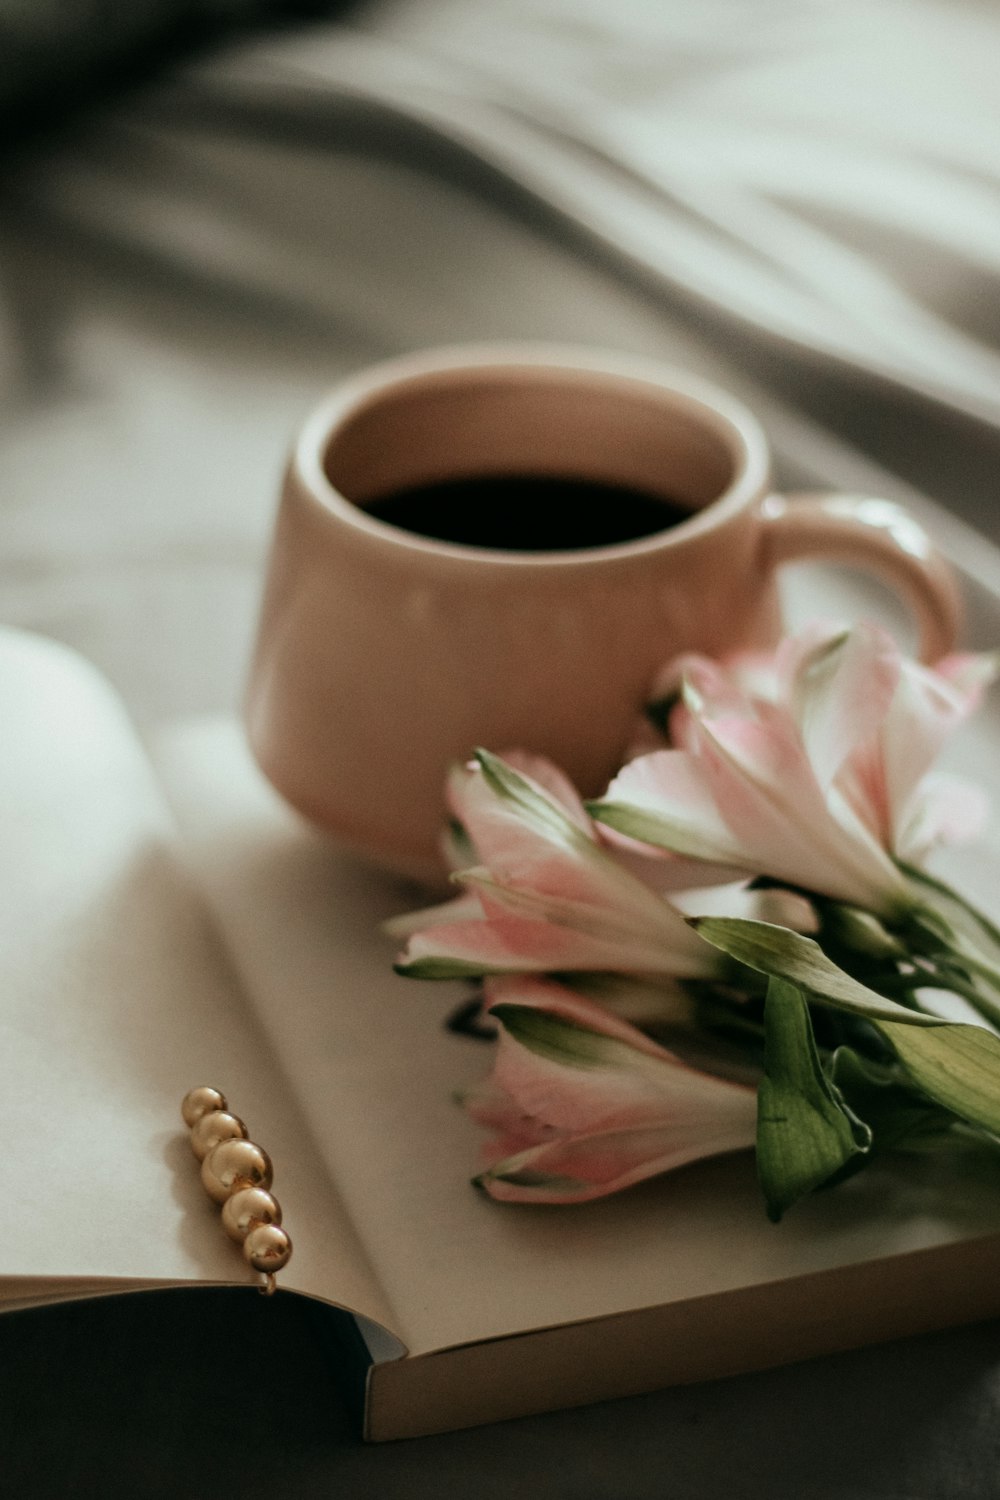 fiori rosa e bianchi accanto a tazza in ceramica marrone